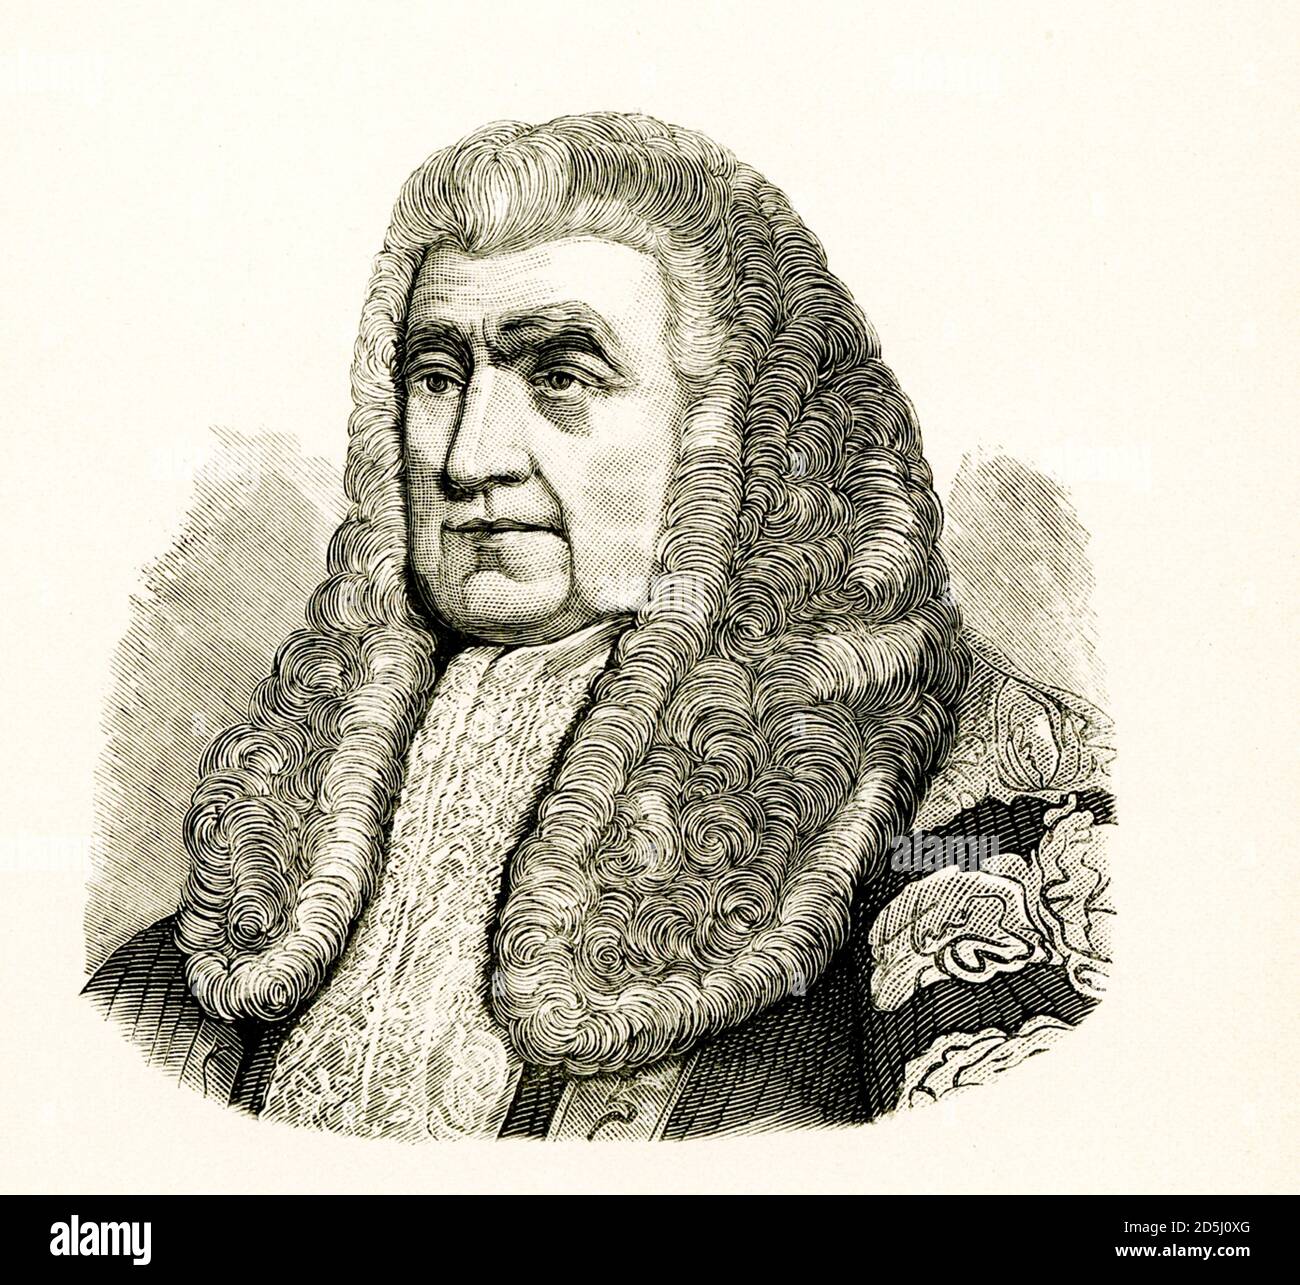 John Scott, 1. Earl of Eldon, war ein britischer Rechtsanwalt und Politiker. Zwischen 1801 und 1806 und zwischen 1807 und 1827 war er Lord High Chancellor von Großbritannien. Als unflexibler Konservativer wandte er sich gegen die römisch-katholische politische Emanzipation, die Abschaffung der Haft als Strafe für Schuldner, die Abschaffung des Sklavenhandels und die Reform des Unterhauses. Stockfoto